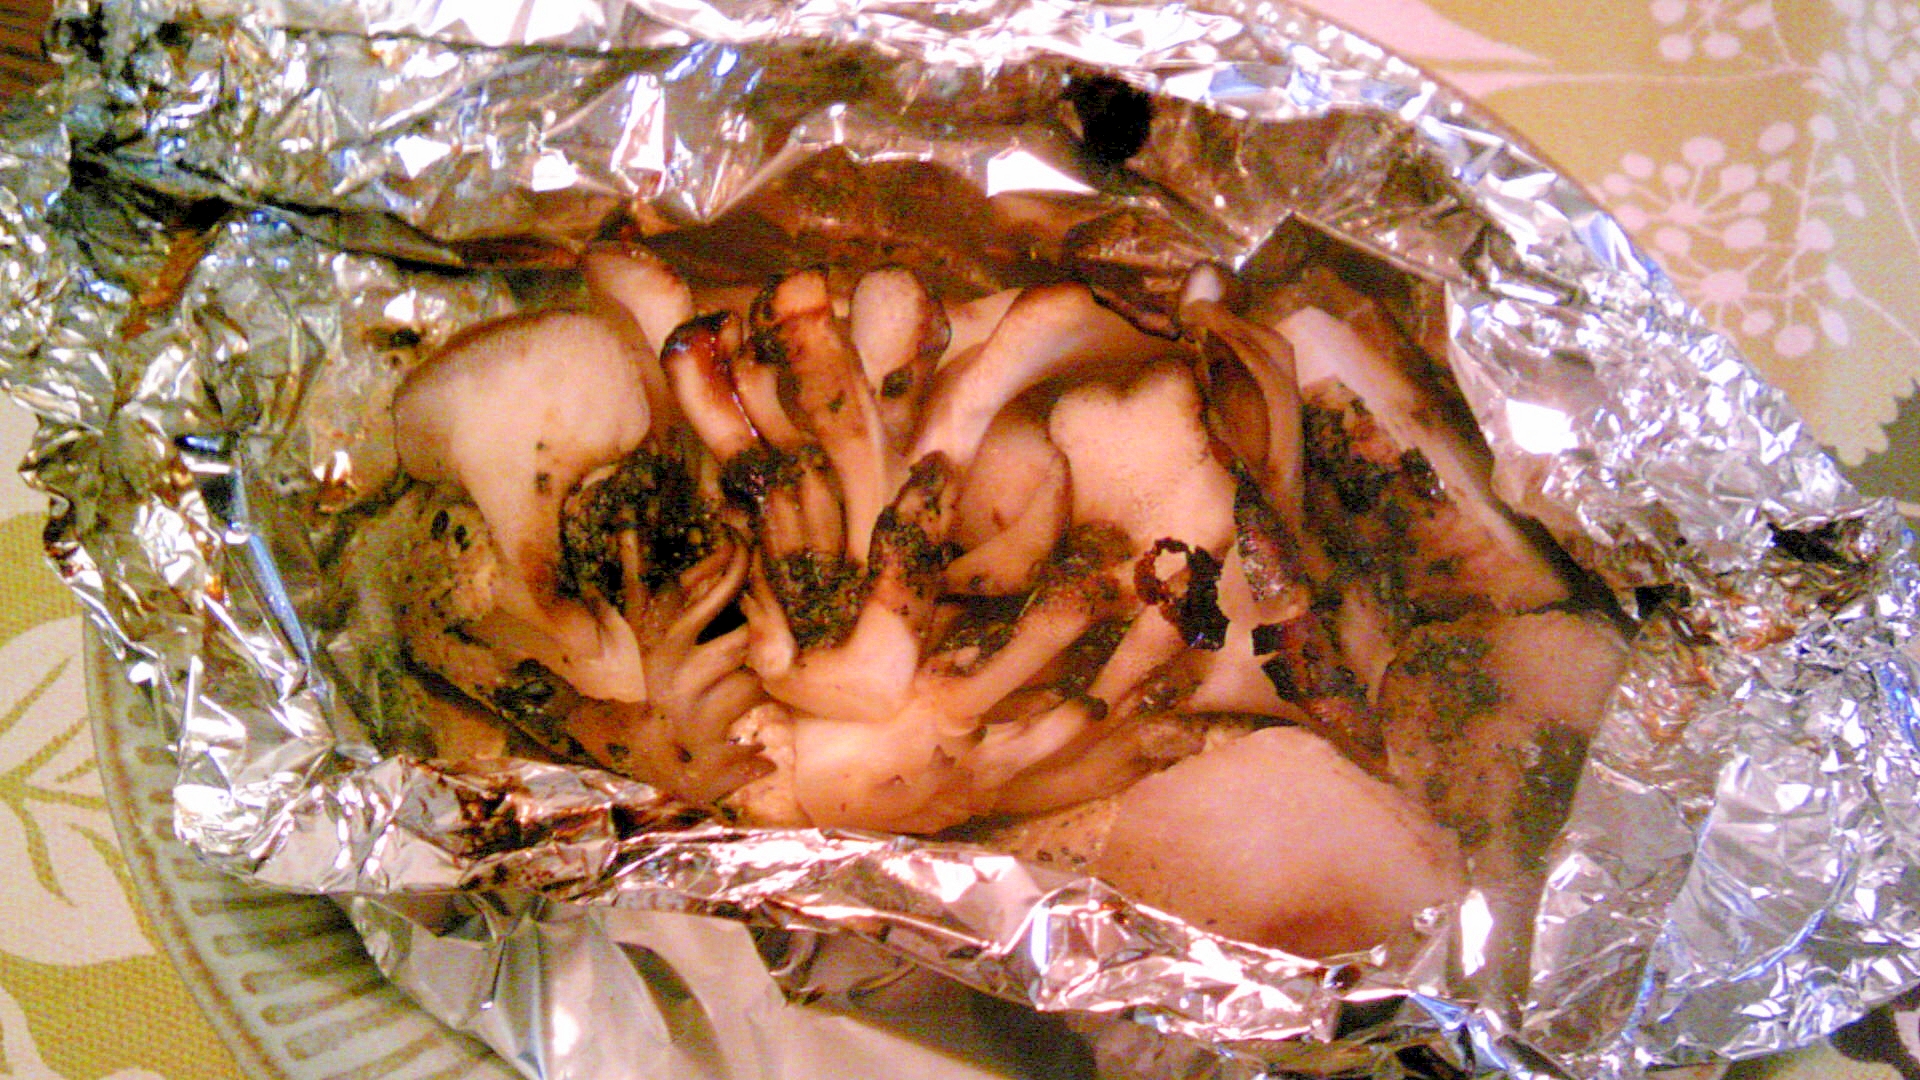 鶏むね肉・里芋・舞茸の甘辛ホイル焼き